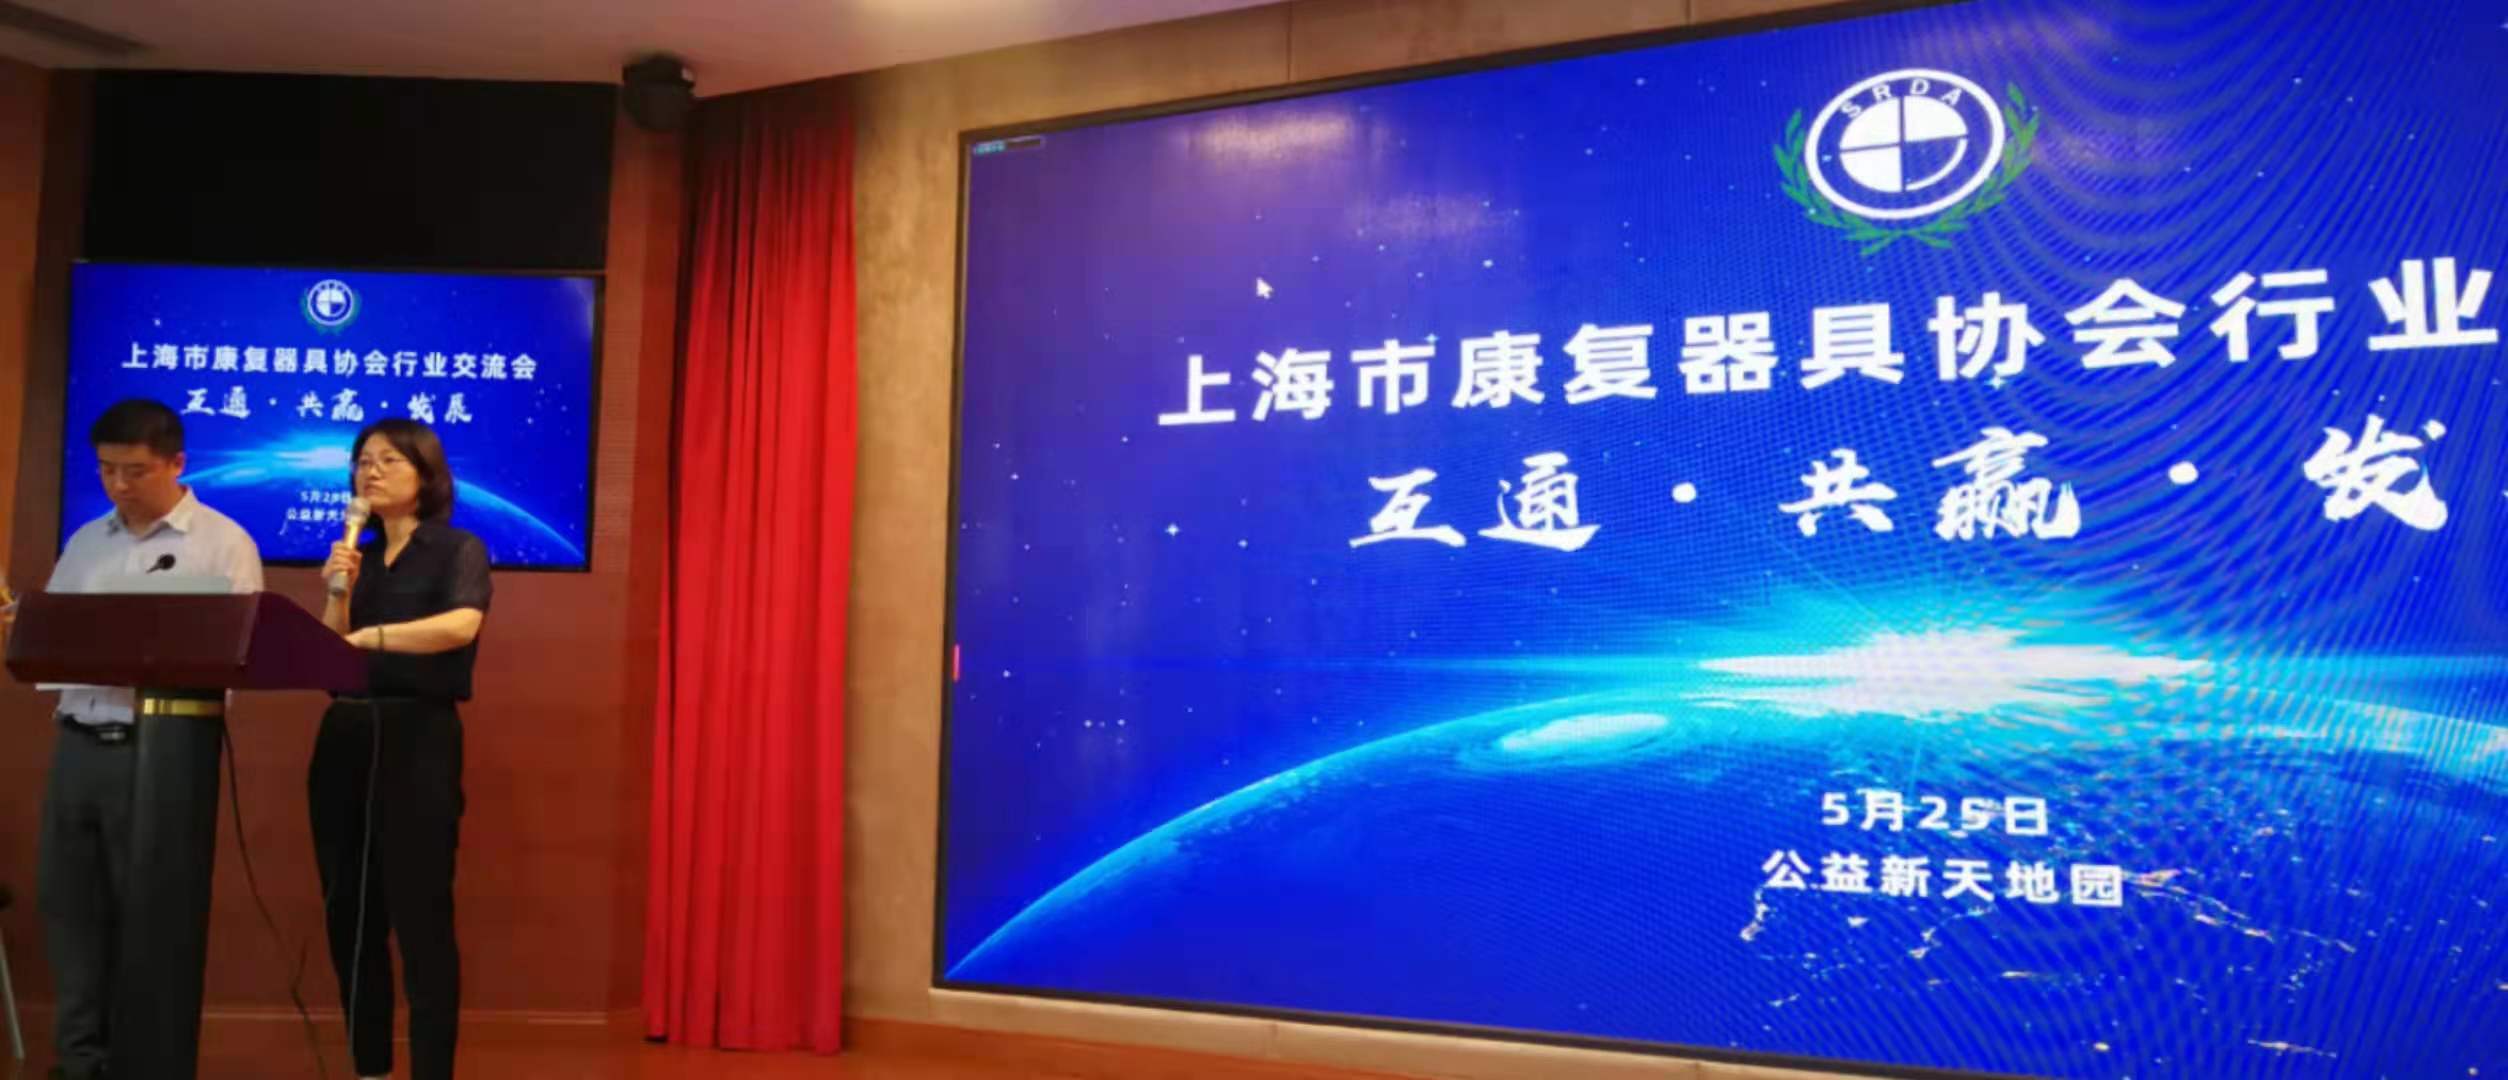 展大参加上海康复器具协会行业交流会